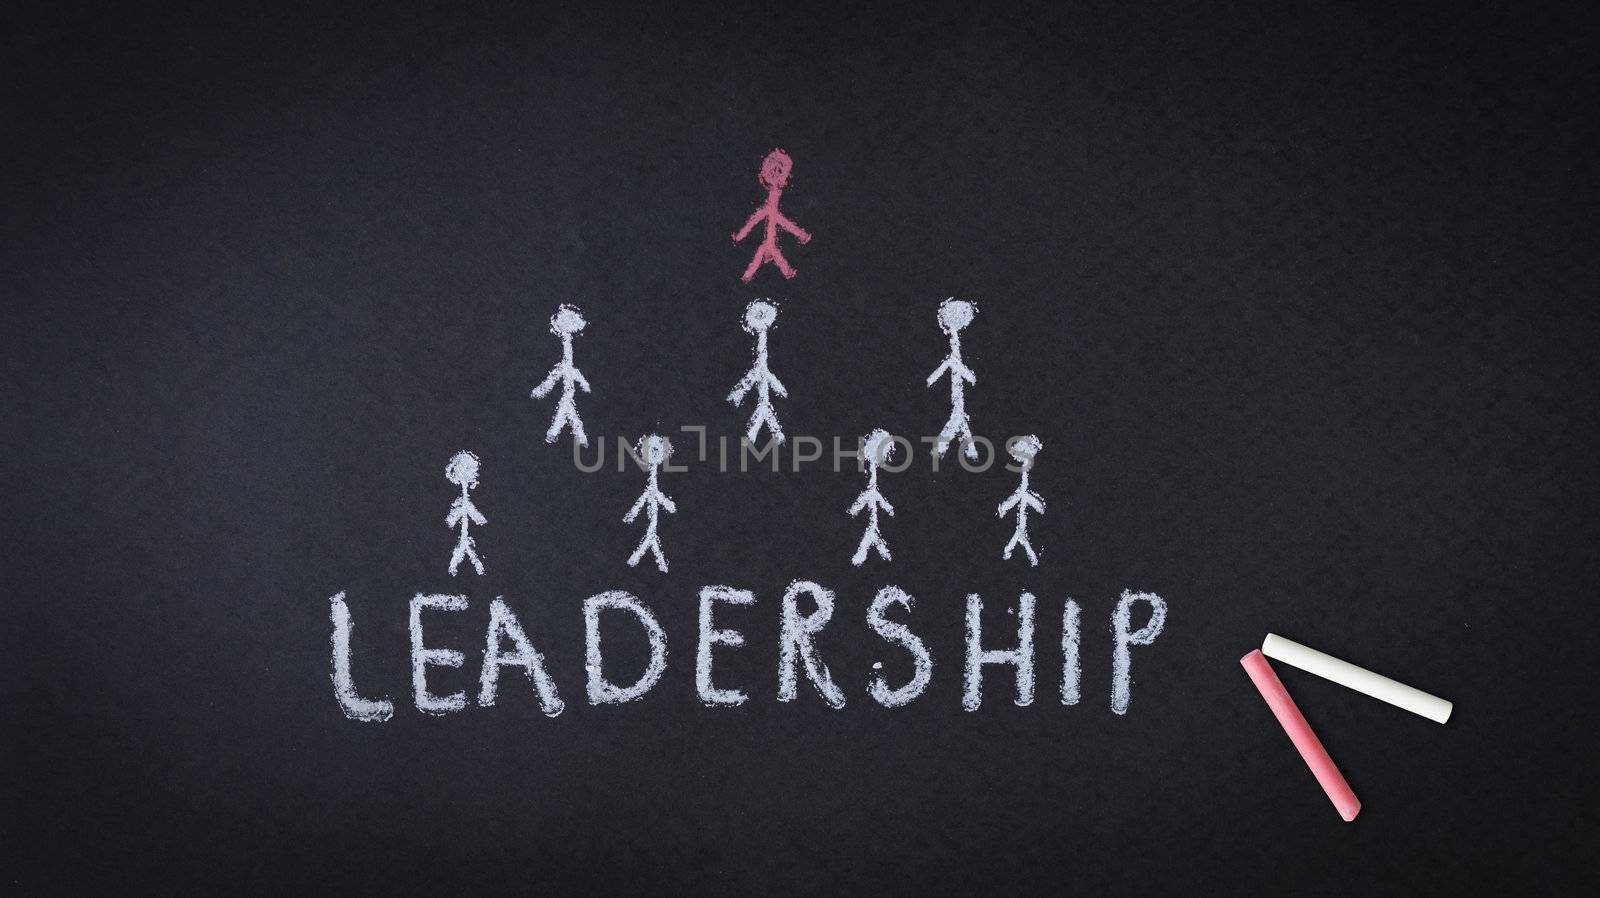 Leadership by kbuntu